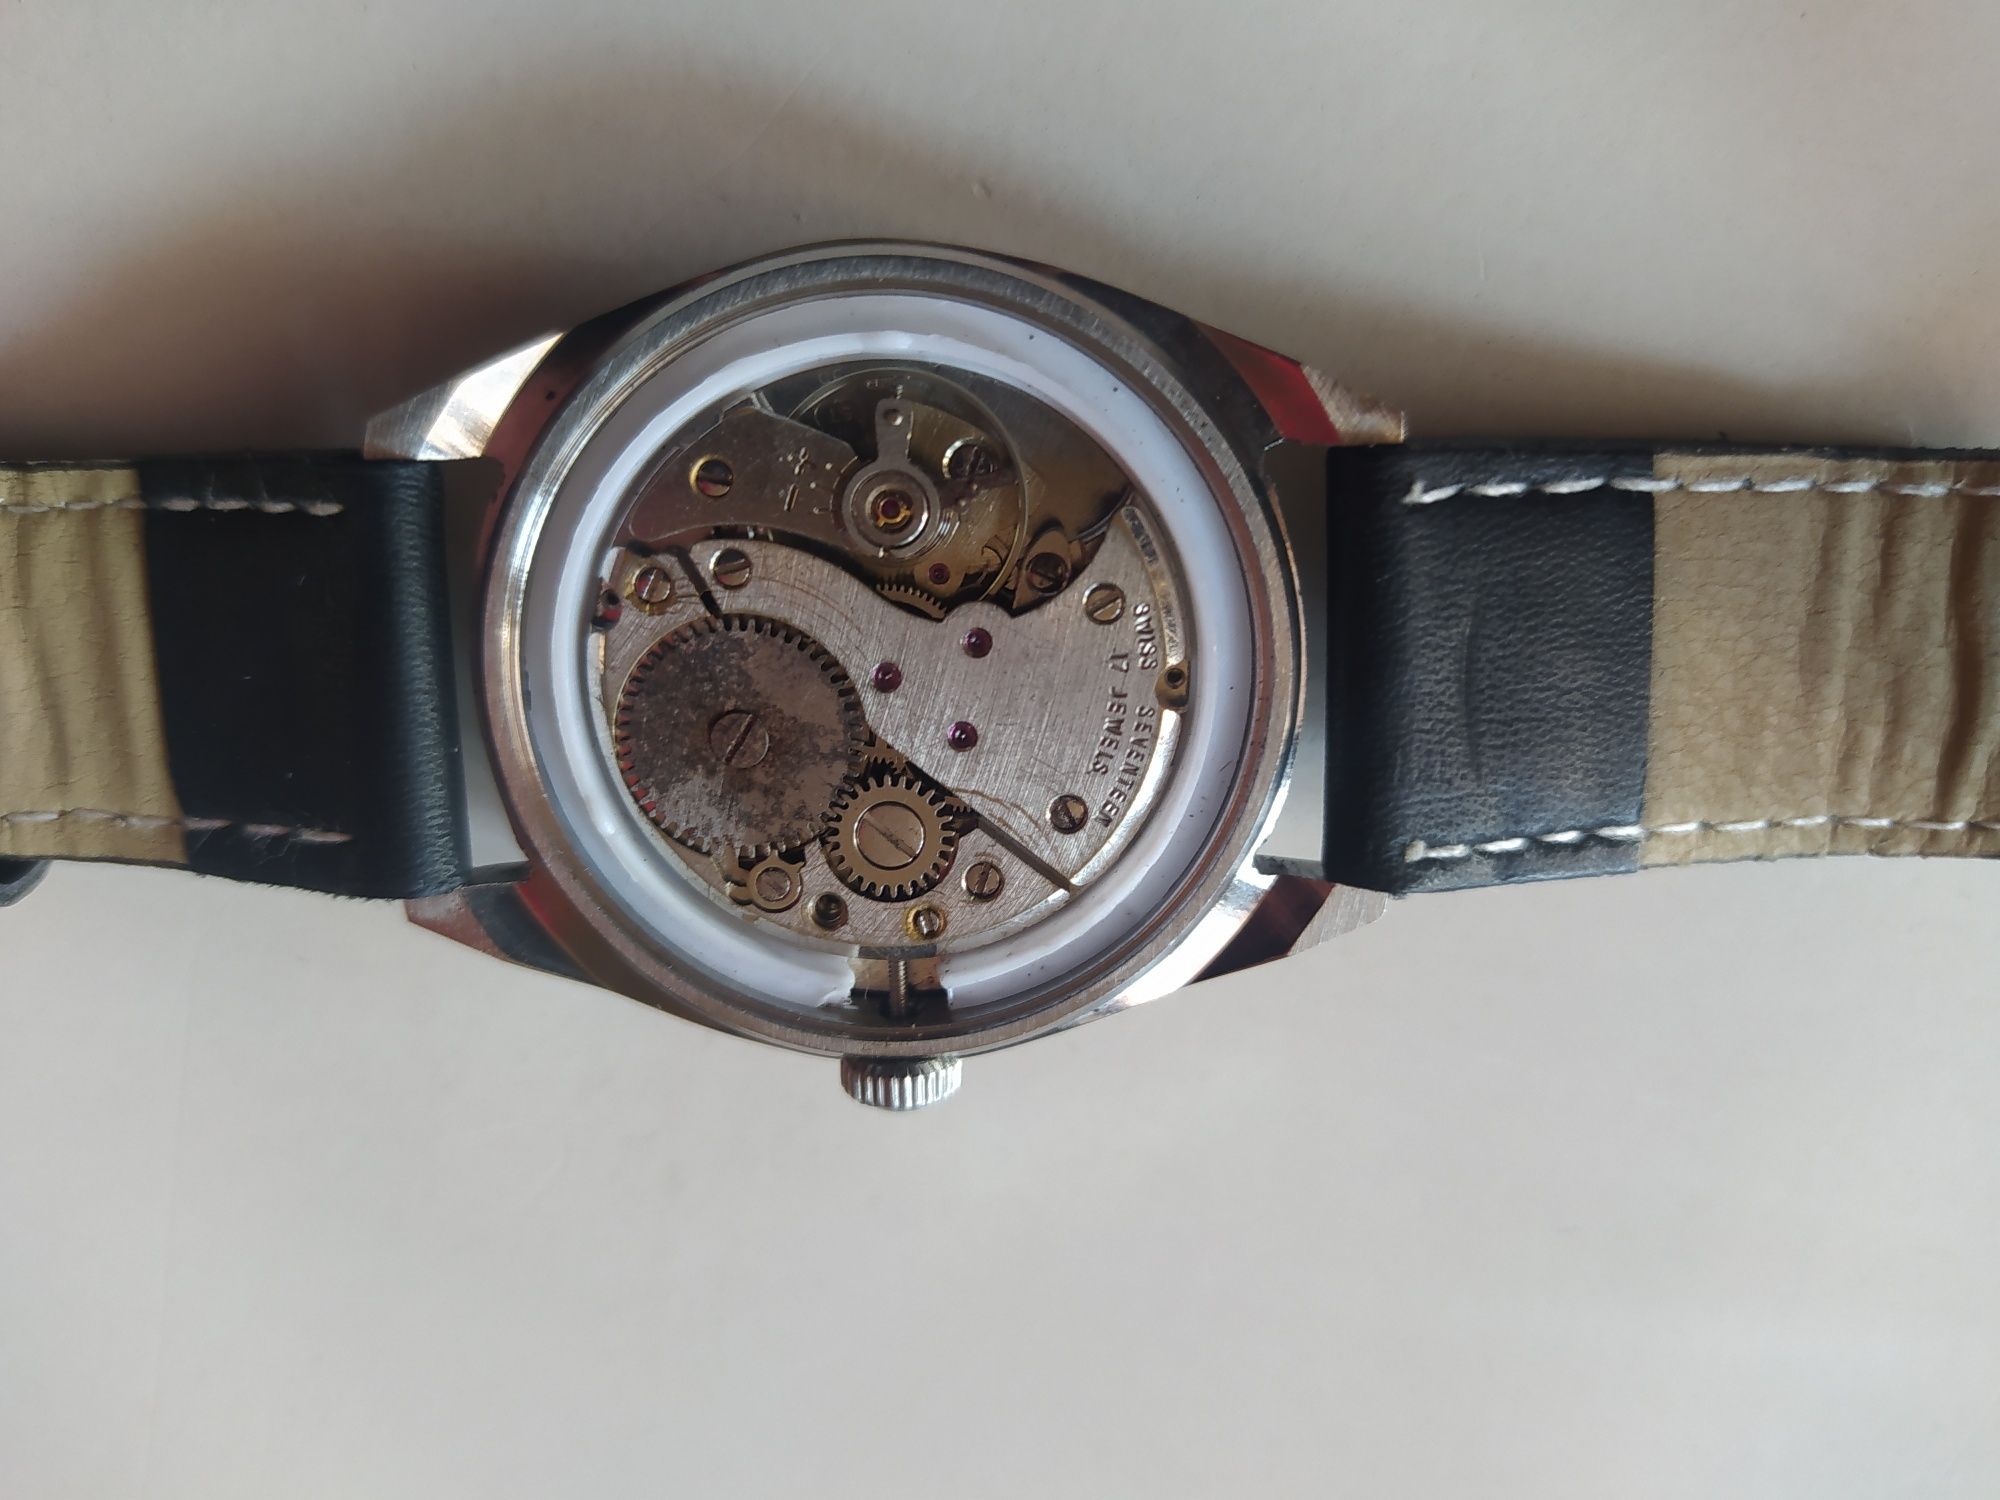 Męski zegarek szwajcarskiej marki Helbros.